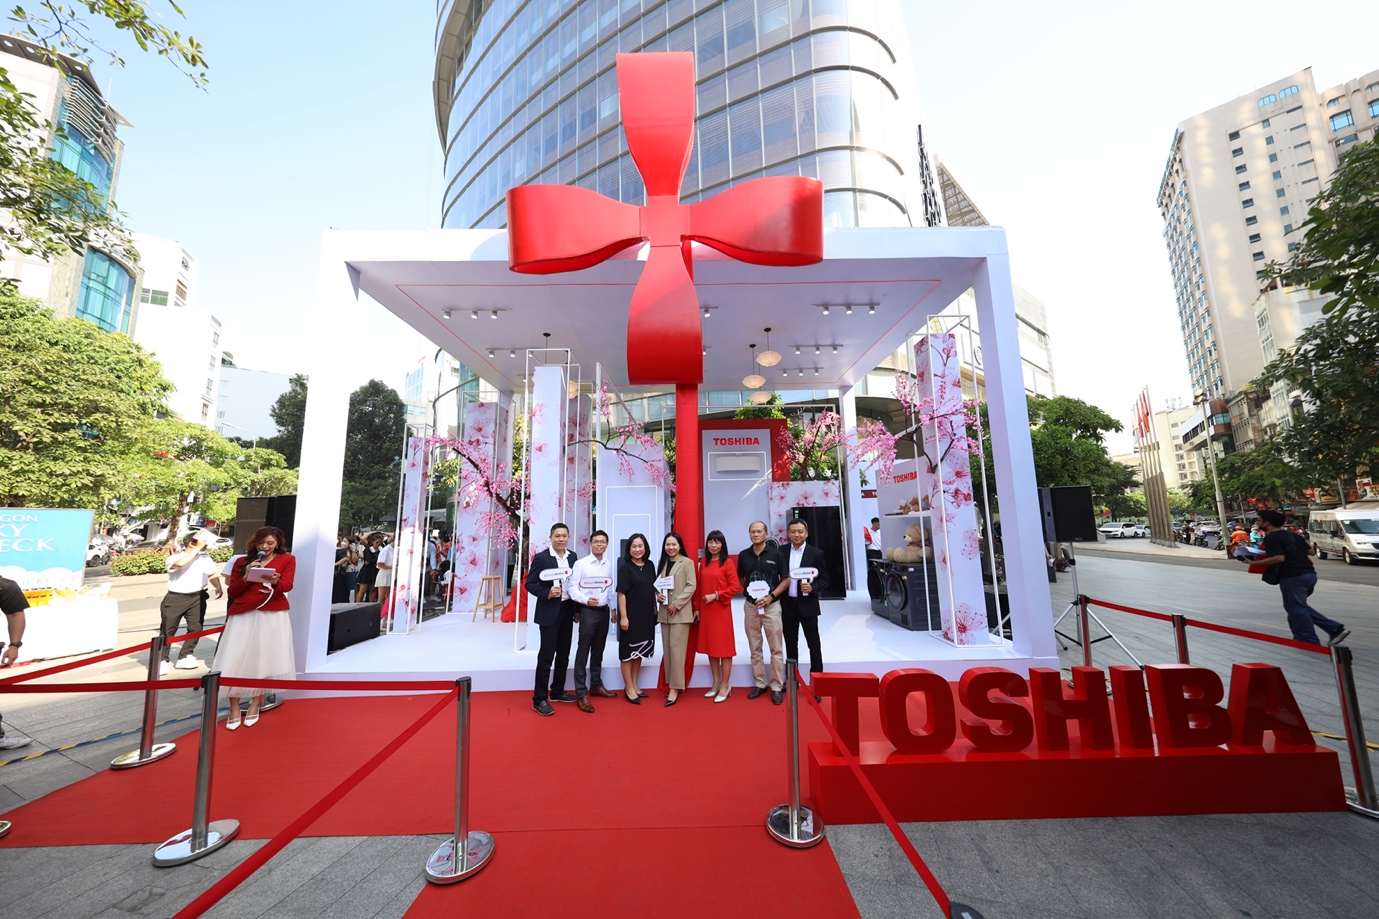 Có gì hấp dẫn trên chuyến xe “Đến Trạm Tết Thịnh” của Toshiba mà khiến nhà nhà cùng tham gia hưởng ứng - Ảnh 2.